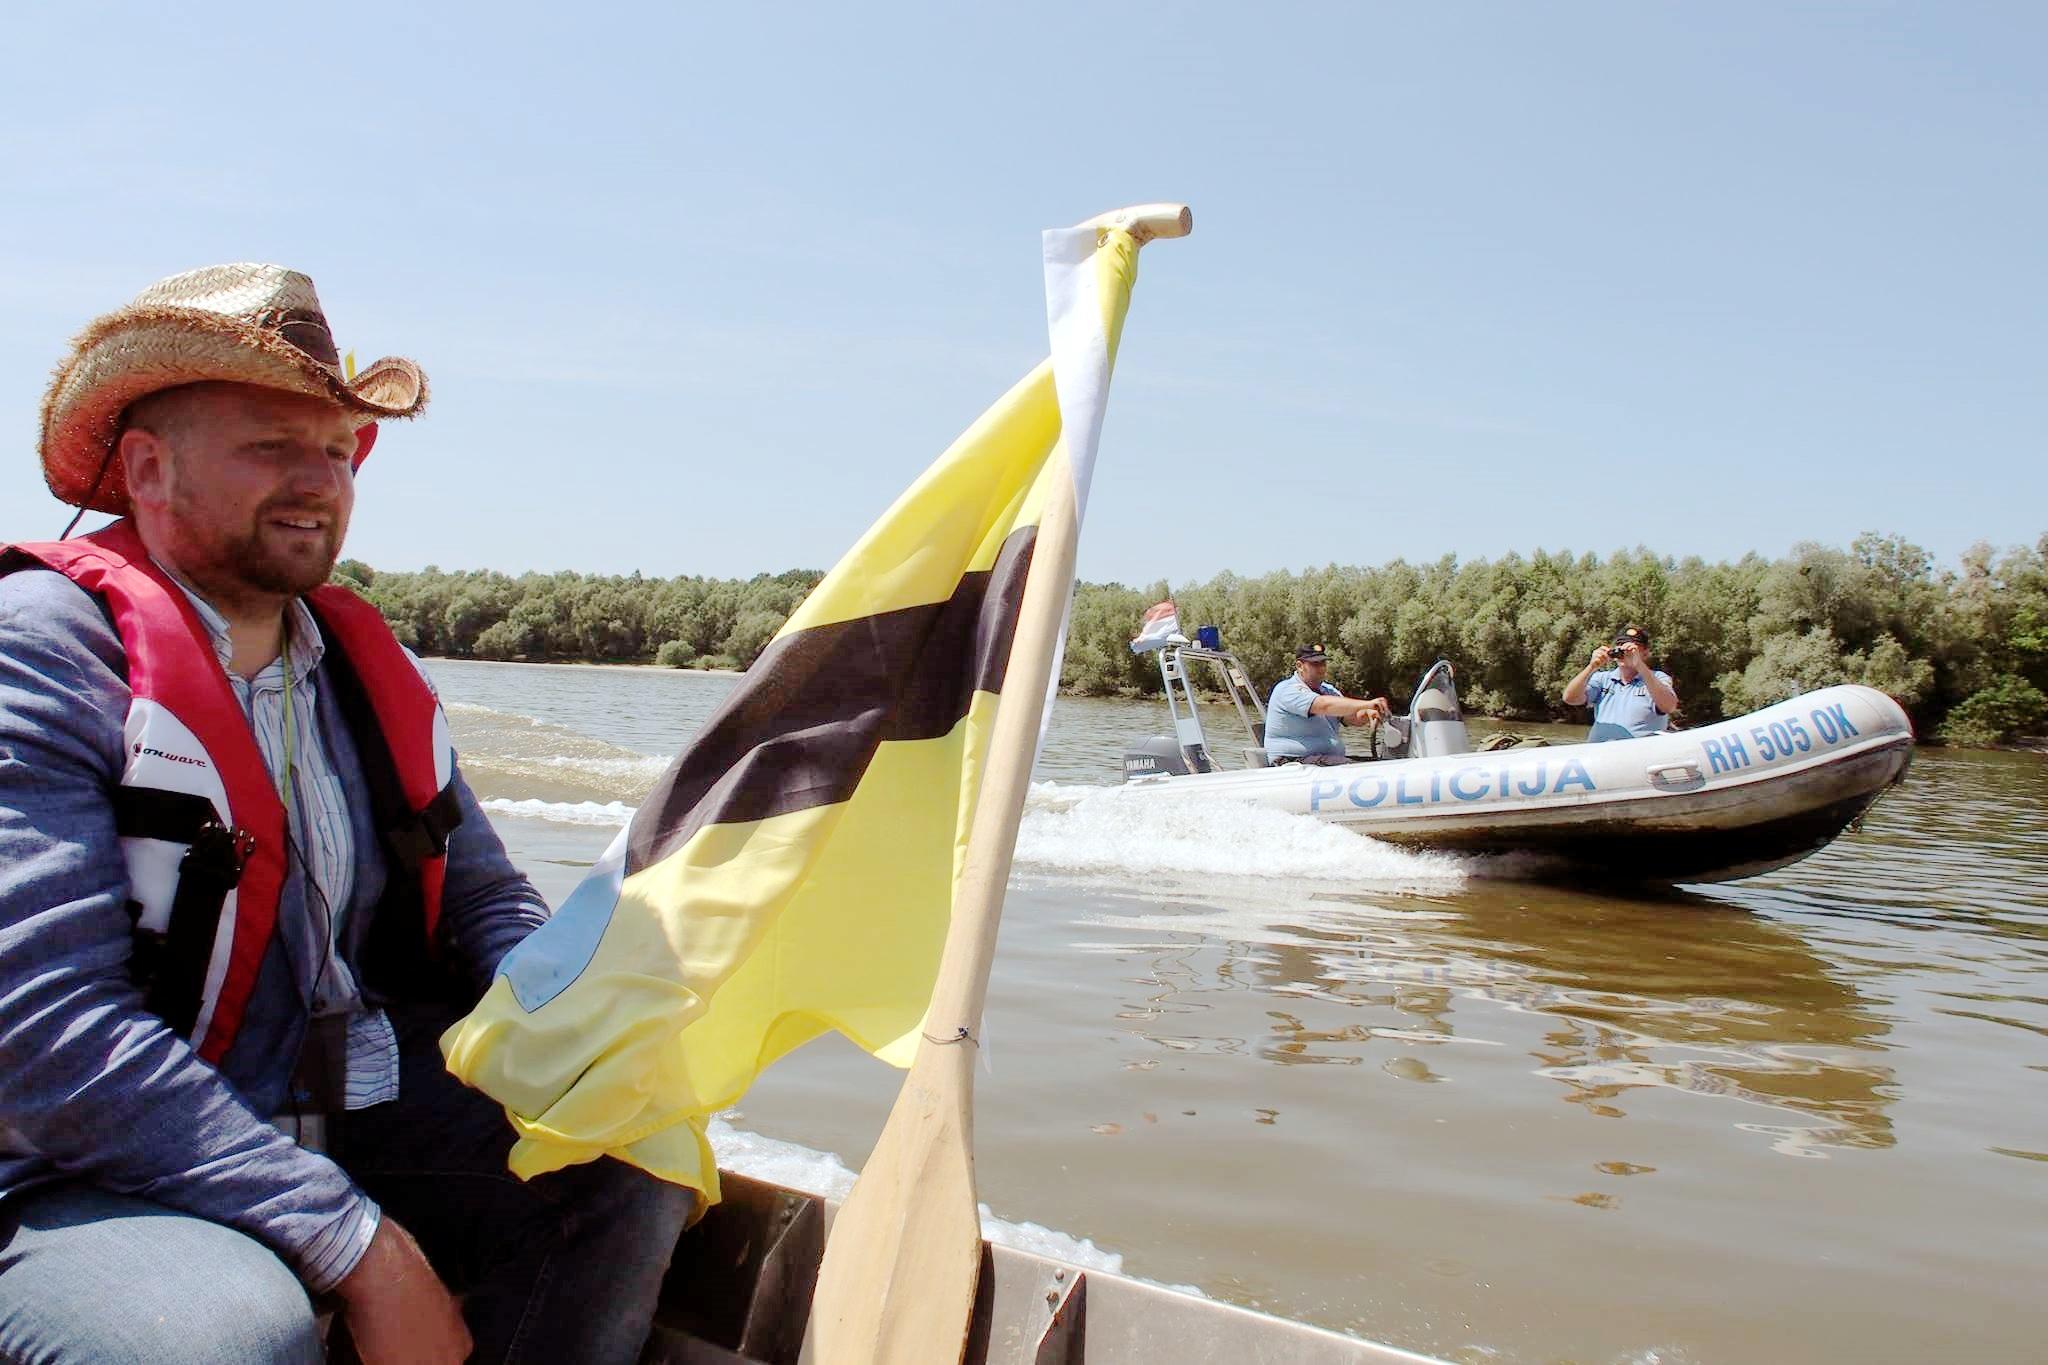 tschechischer Politiker Vít Jedlička in einem Schlauchboot beobachtet von der kroatischen Polizei